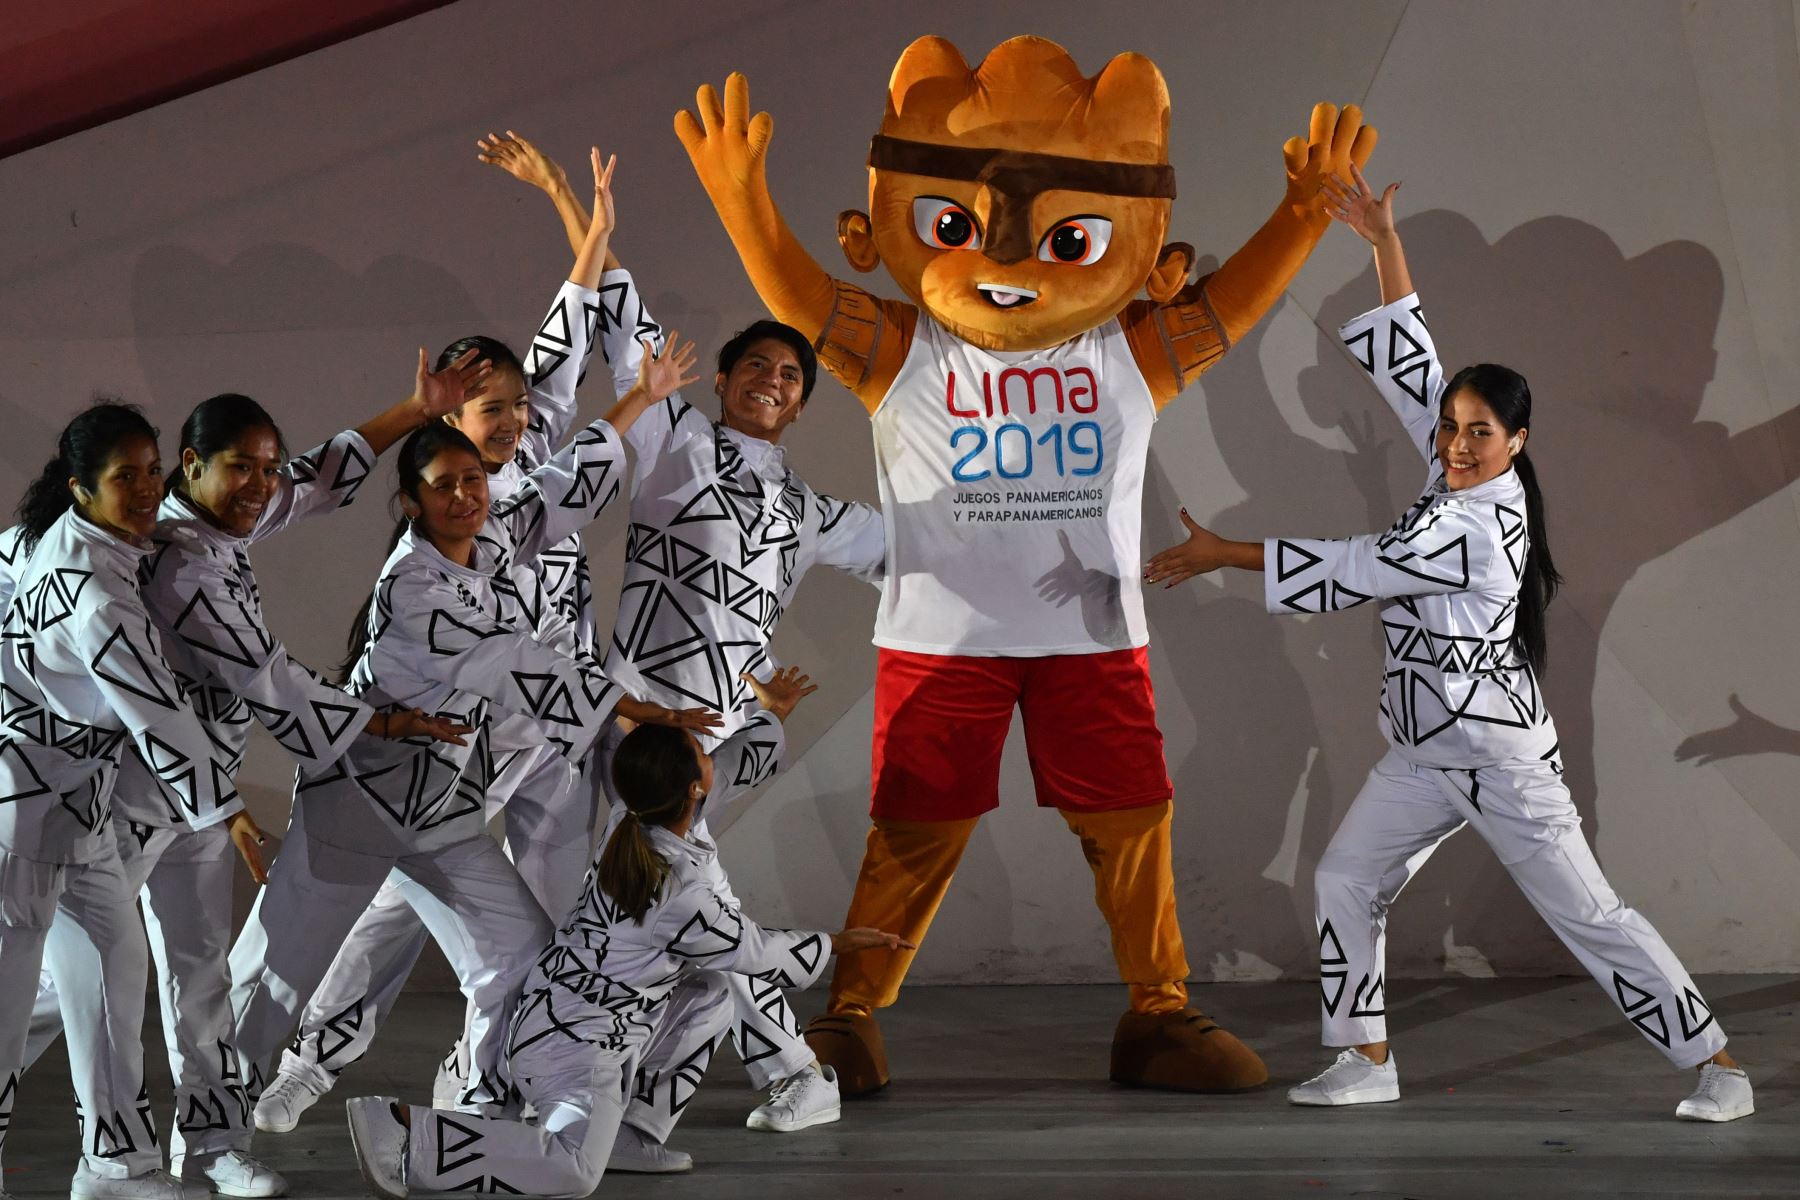 Los artistas se presentan con la mascota de los Juegos Panamericanos de Lima 2019, Milco, durante la ceremonia de apertura de los Juegos en el Estadio Nacional de Lima.
Foto: AFP